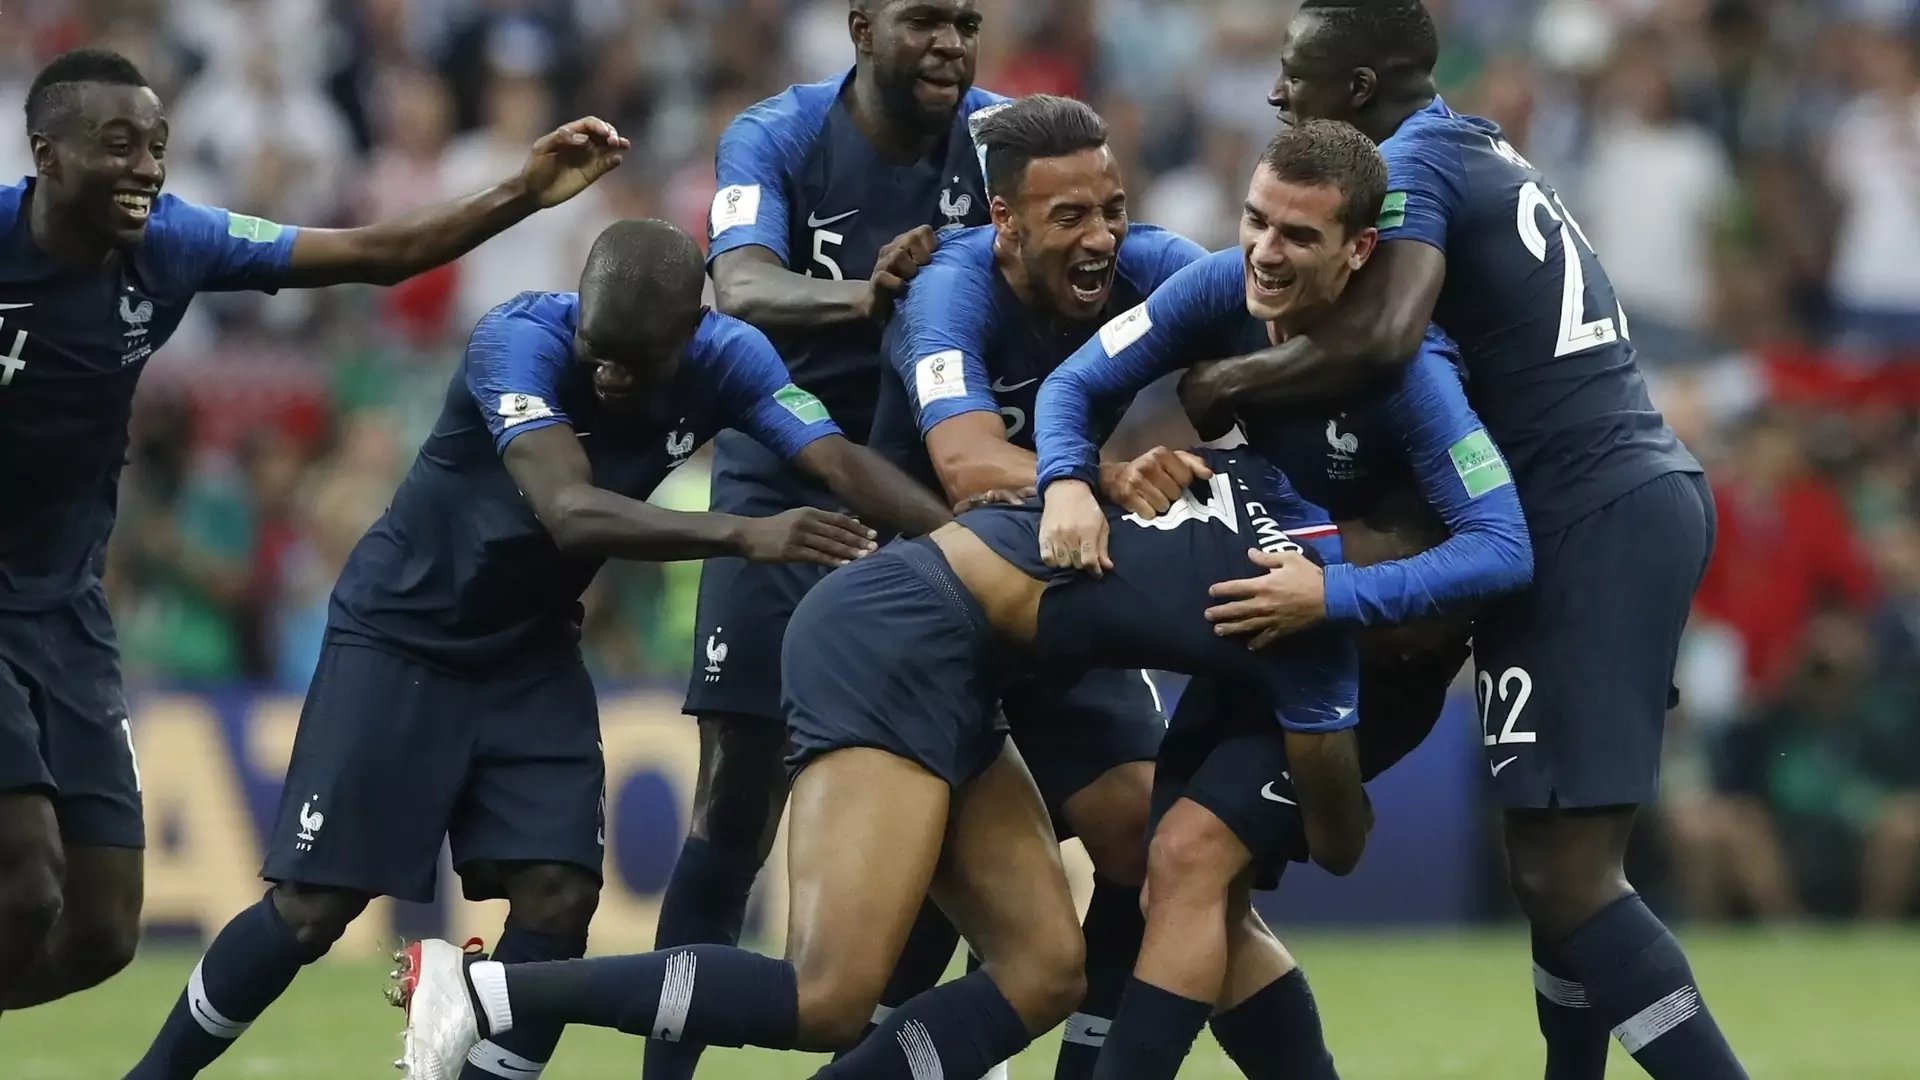 "Murzynizacja postępuje". Po wygranej Francji, polscy rasiści atakują sportowców